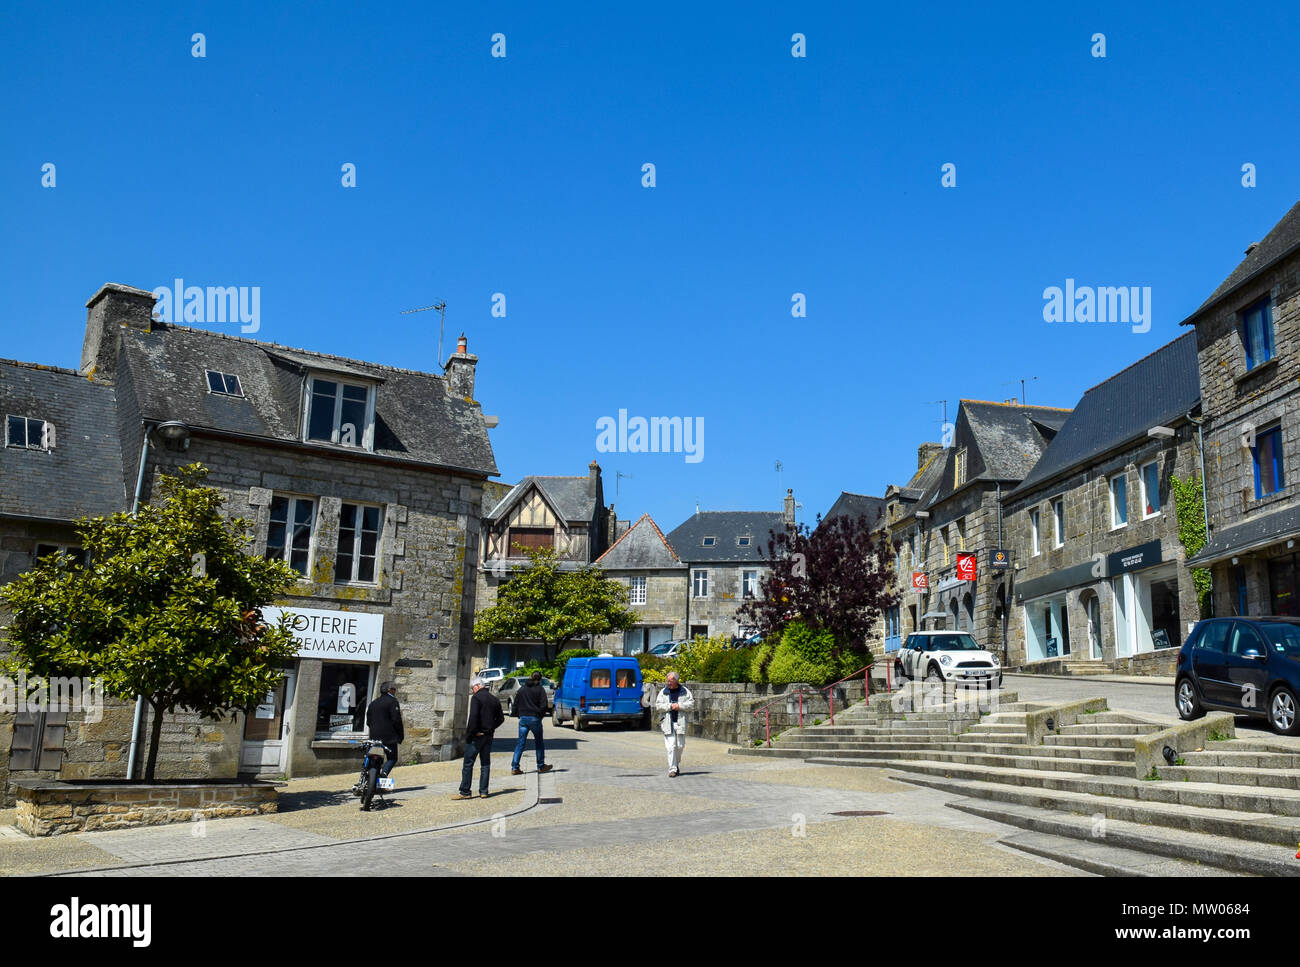 Ciel clair et un ciel bleu profond sur un week-end à Rostrenan, Bretagne, France. Banque D'Images